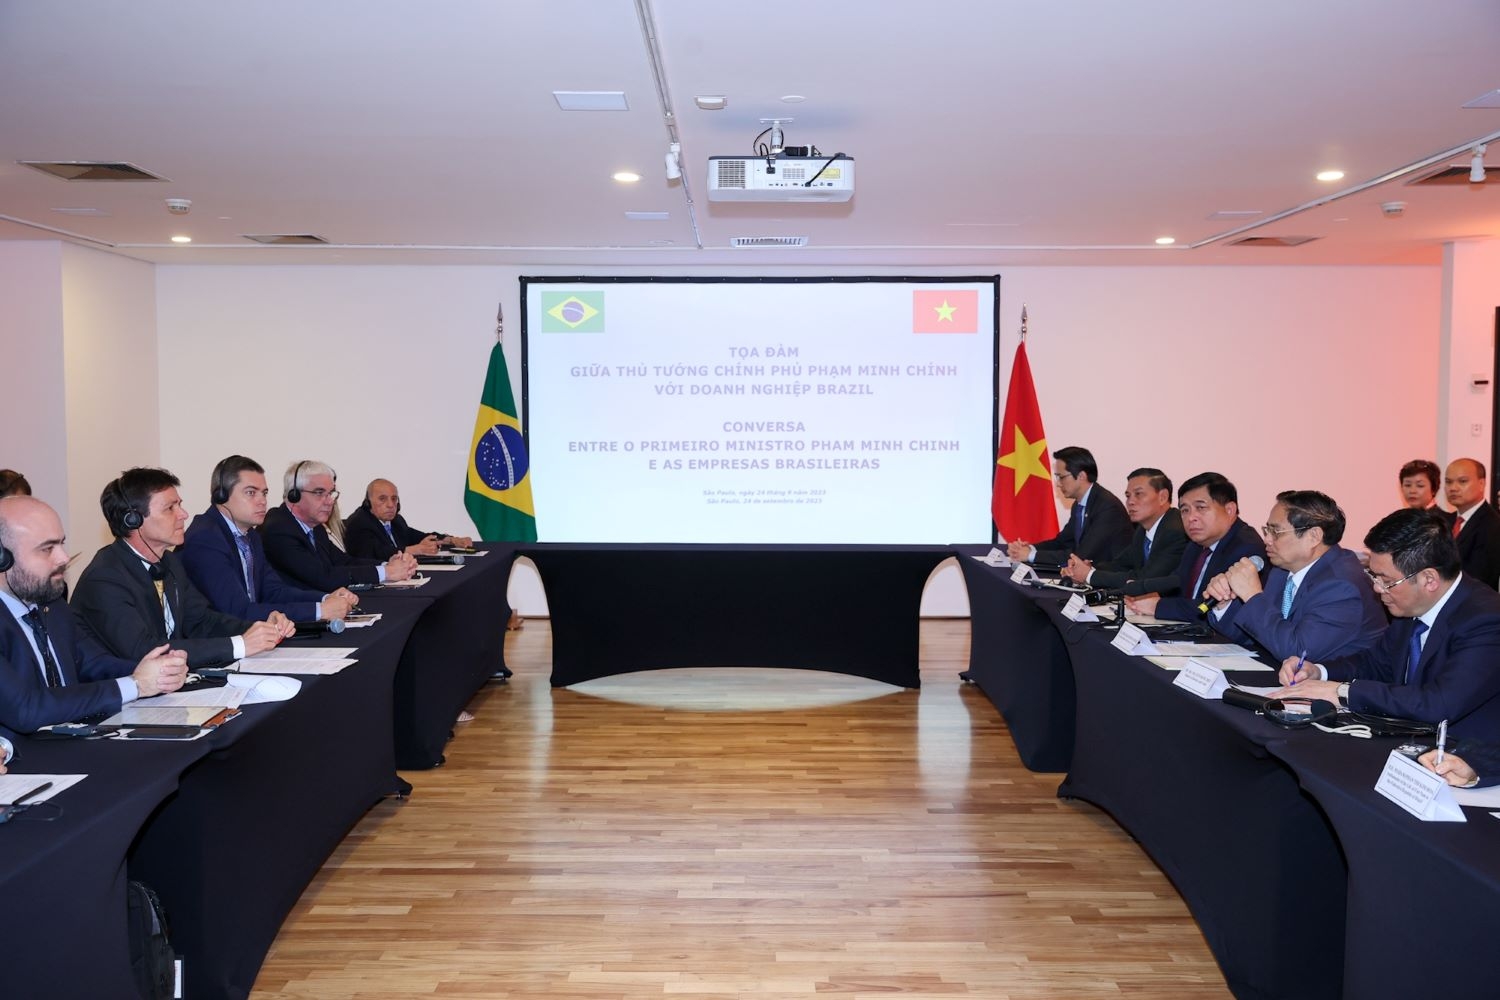 Doanh nghiệp Brazil có thể yên tâm kinh doanh thành công, bền vững ở Việt Nam